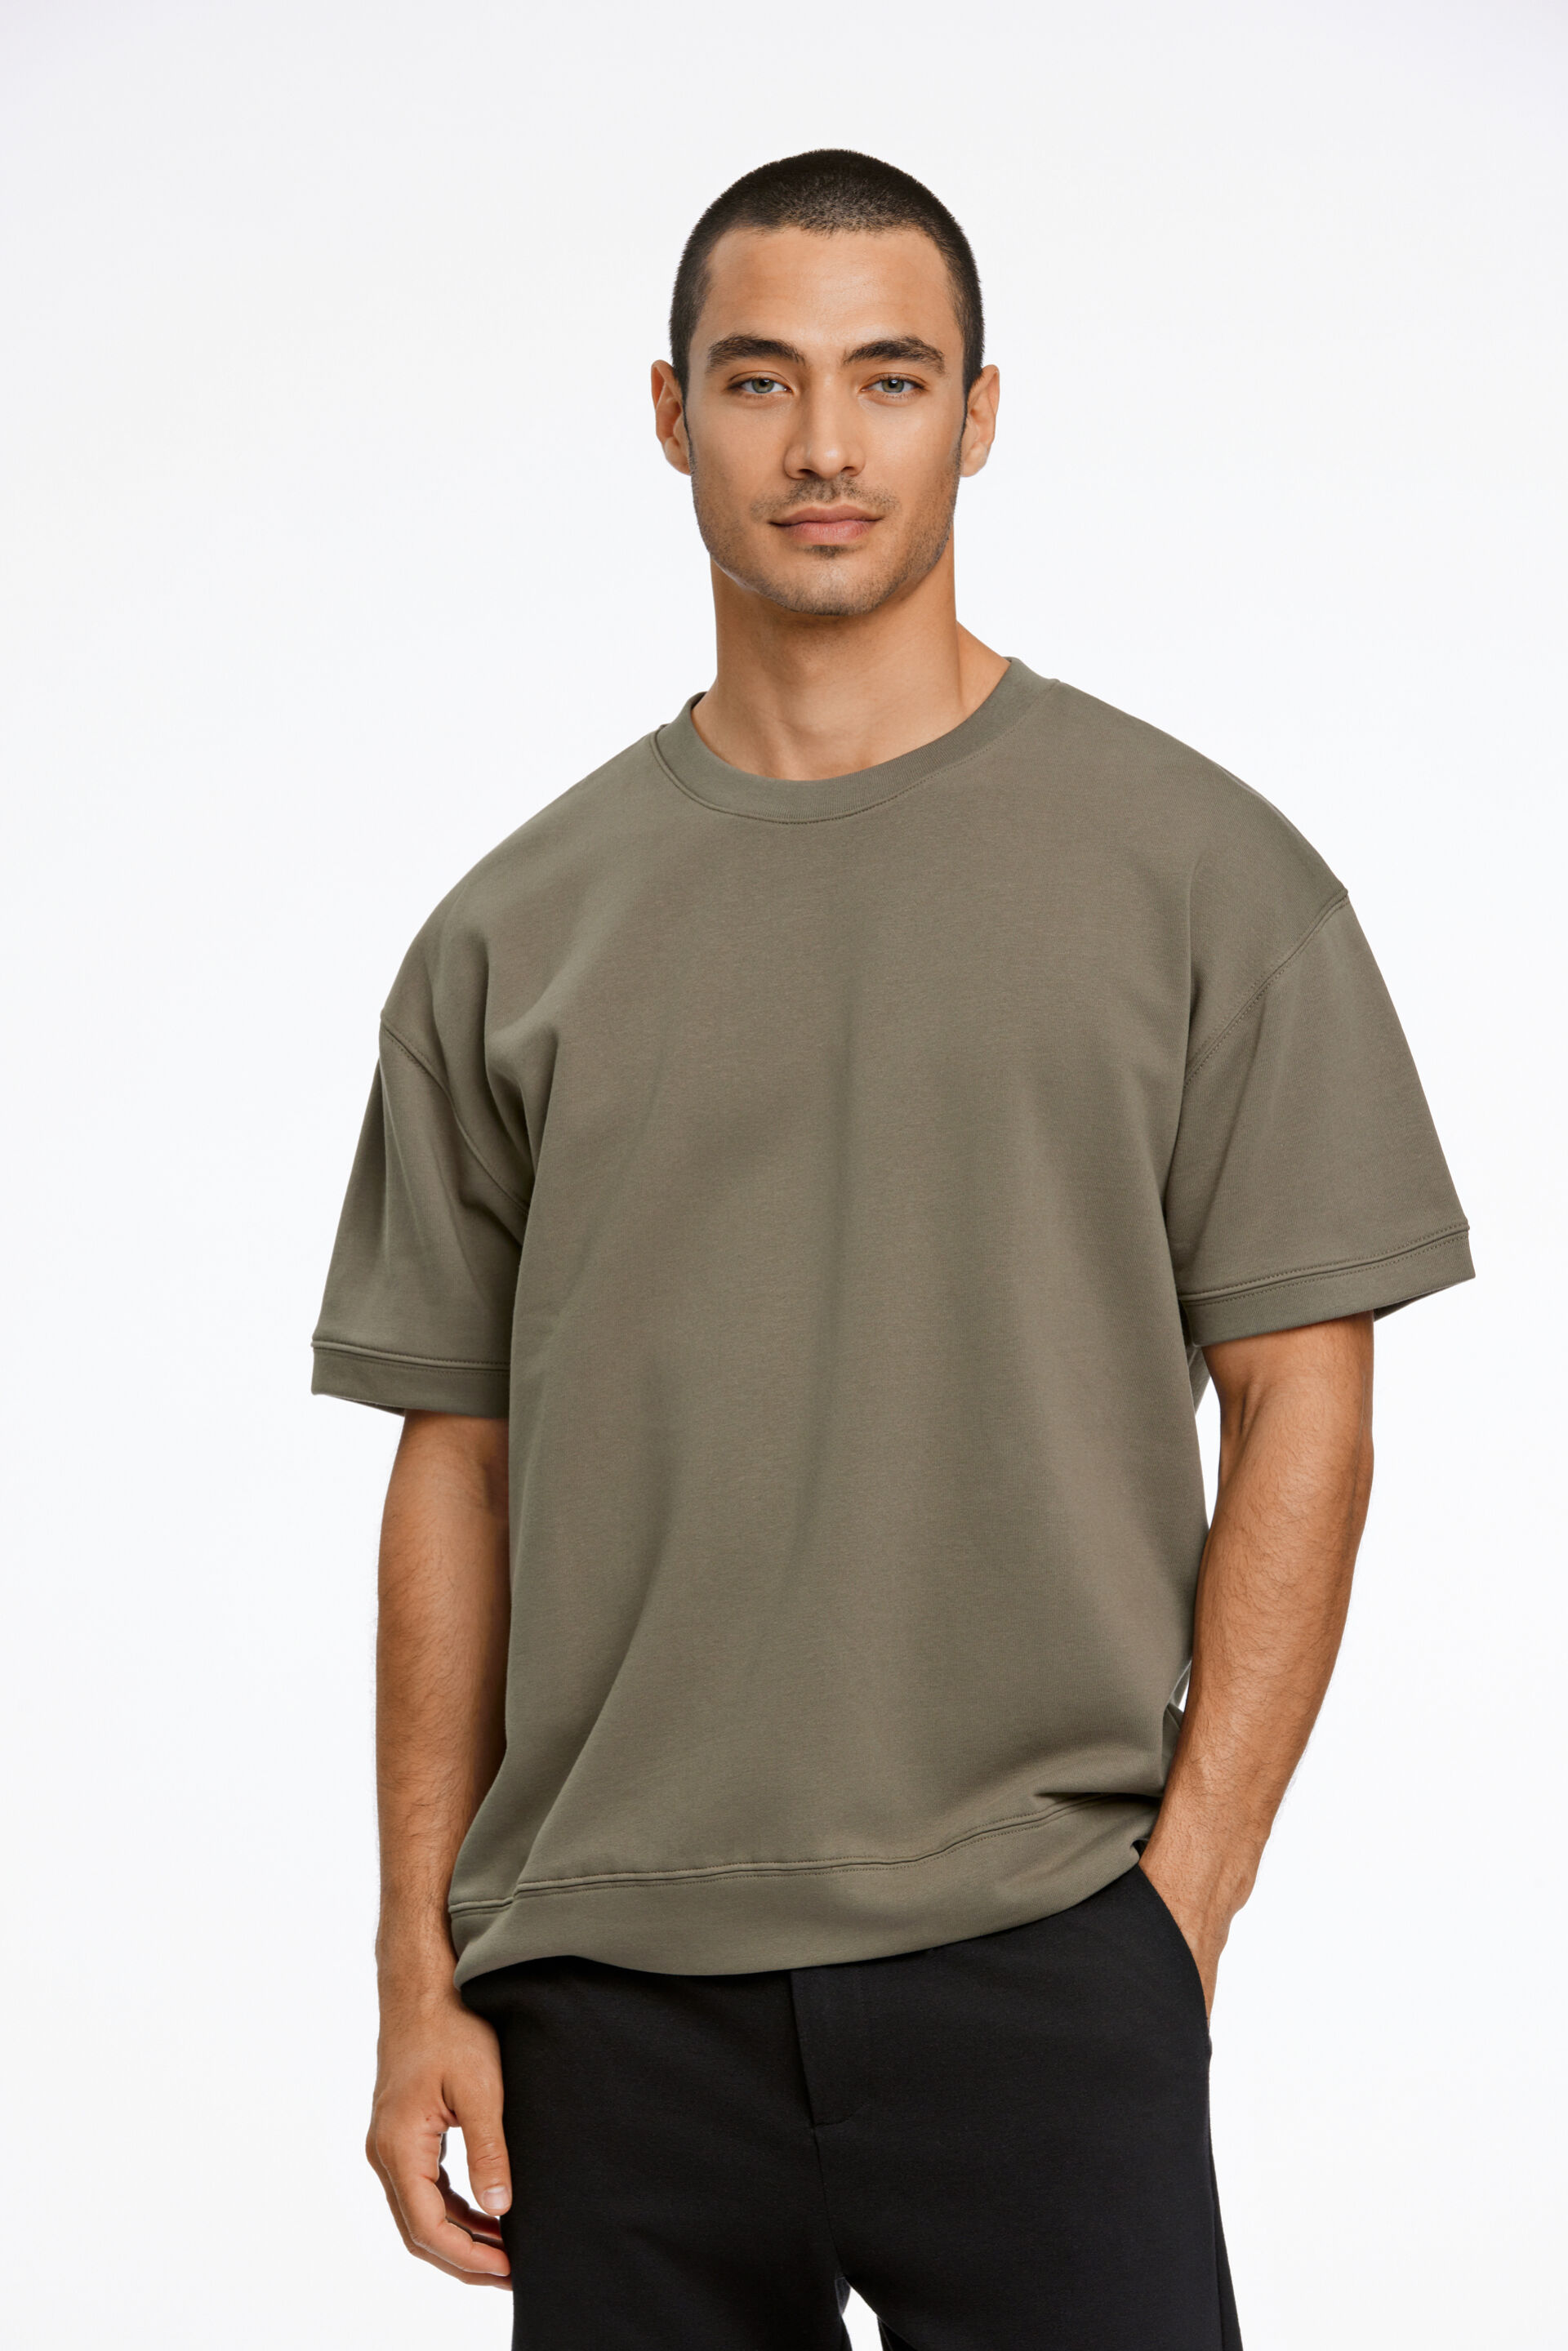 T-shirt T-shirt Groen 30-705150